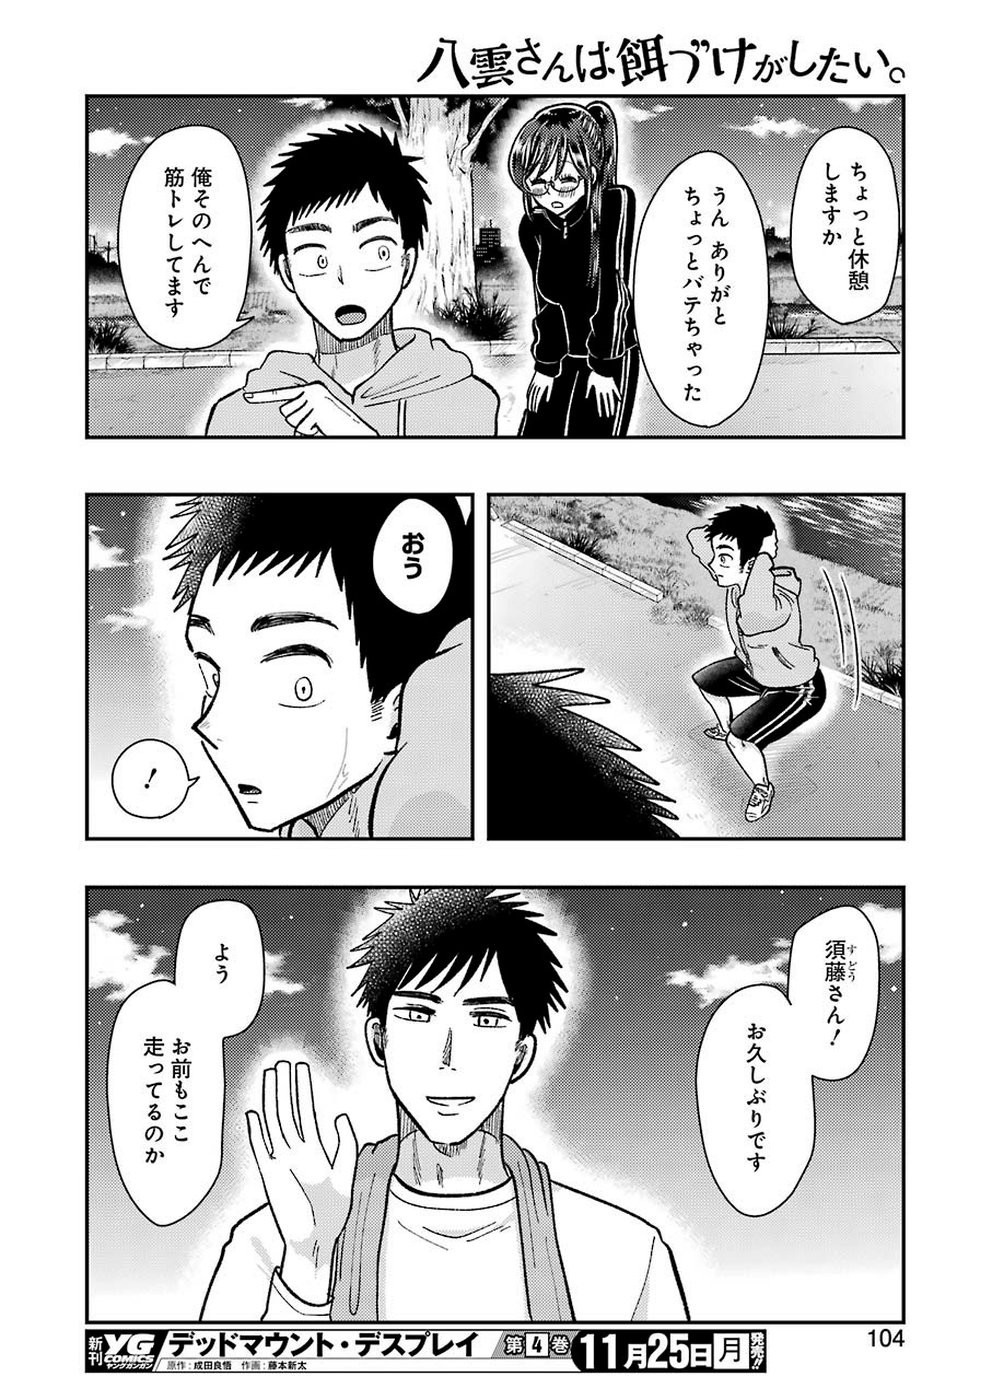 Yakumo-san wa Edzuke ga Shitai. - Chapter 061 - Page 16